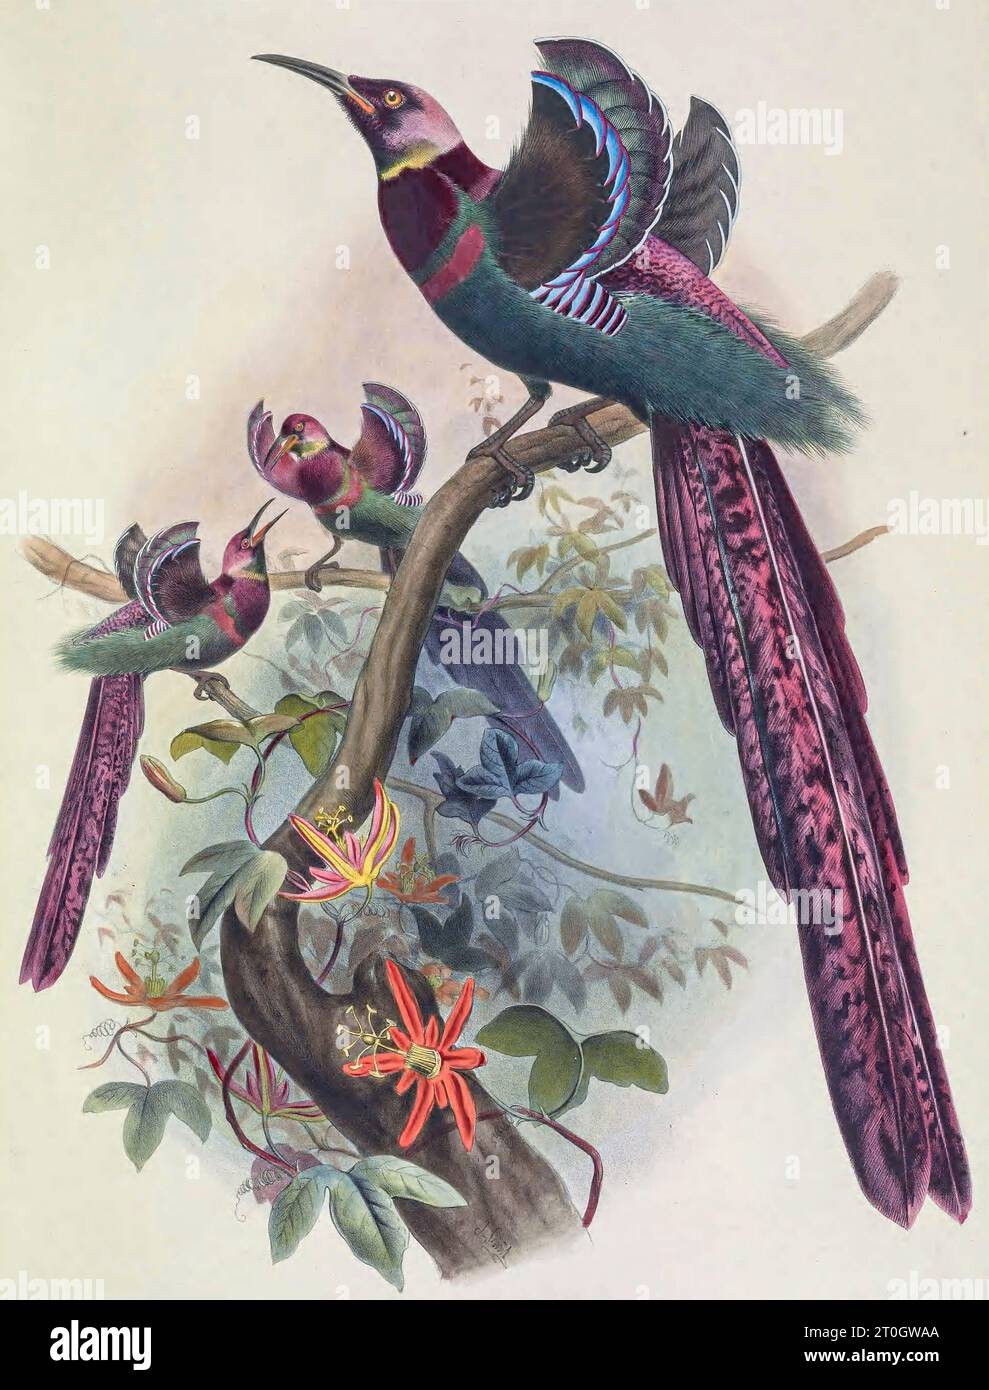 L'oiseau de paradis d'Elliot, illustration du 19e siècle Banque D'Images